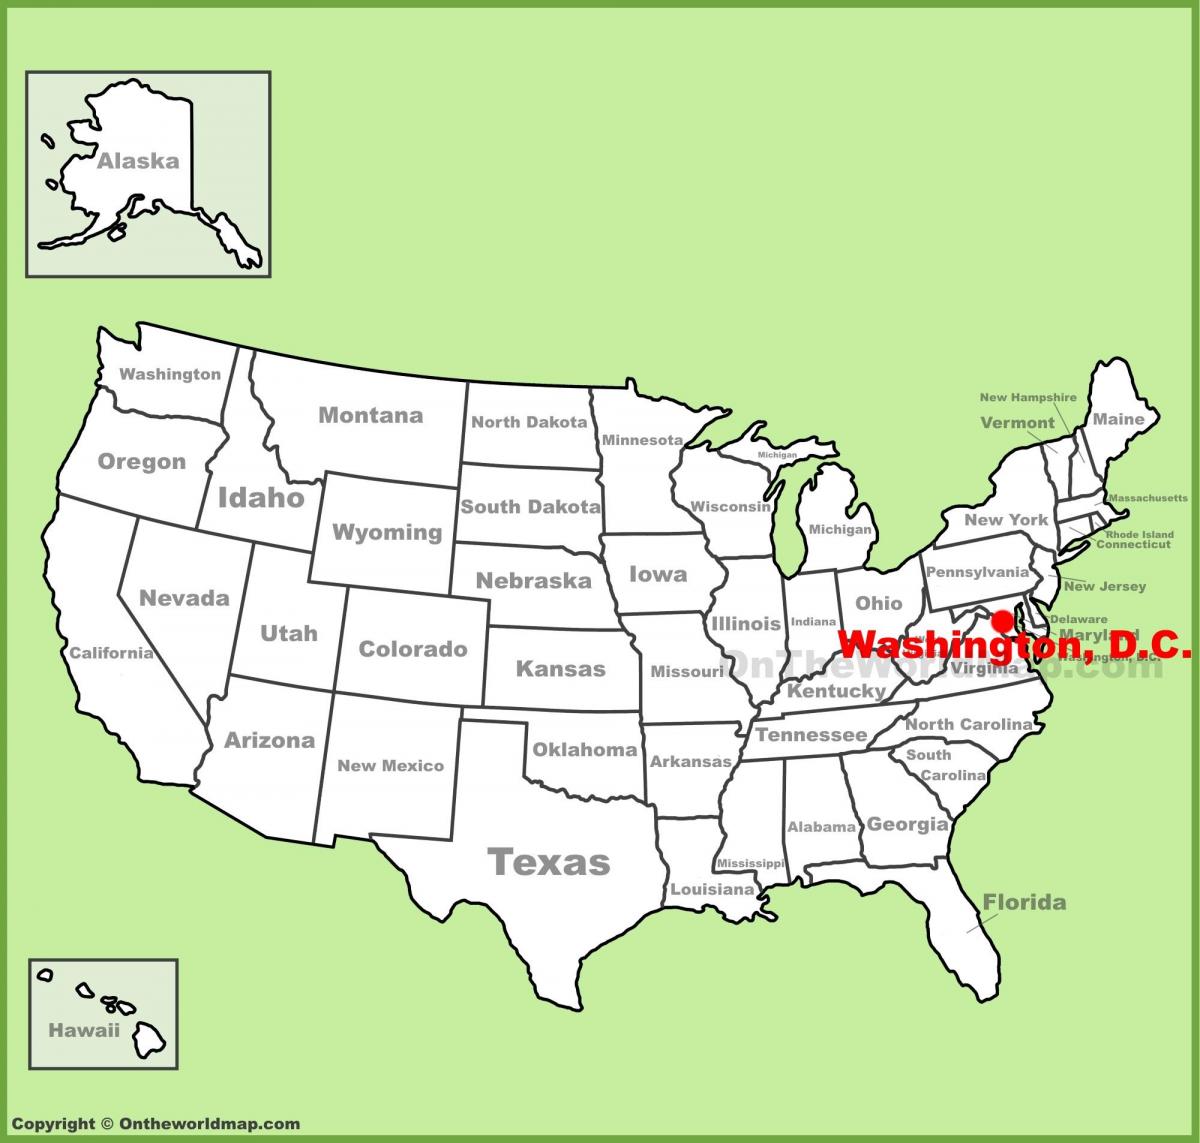 washington dc op de kaart van amerika